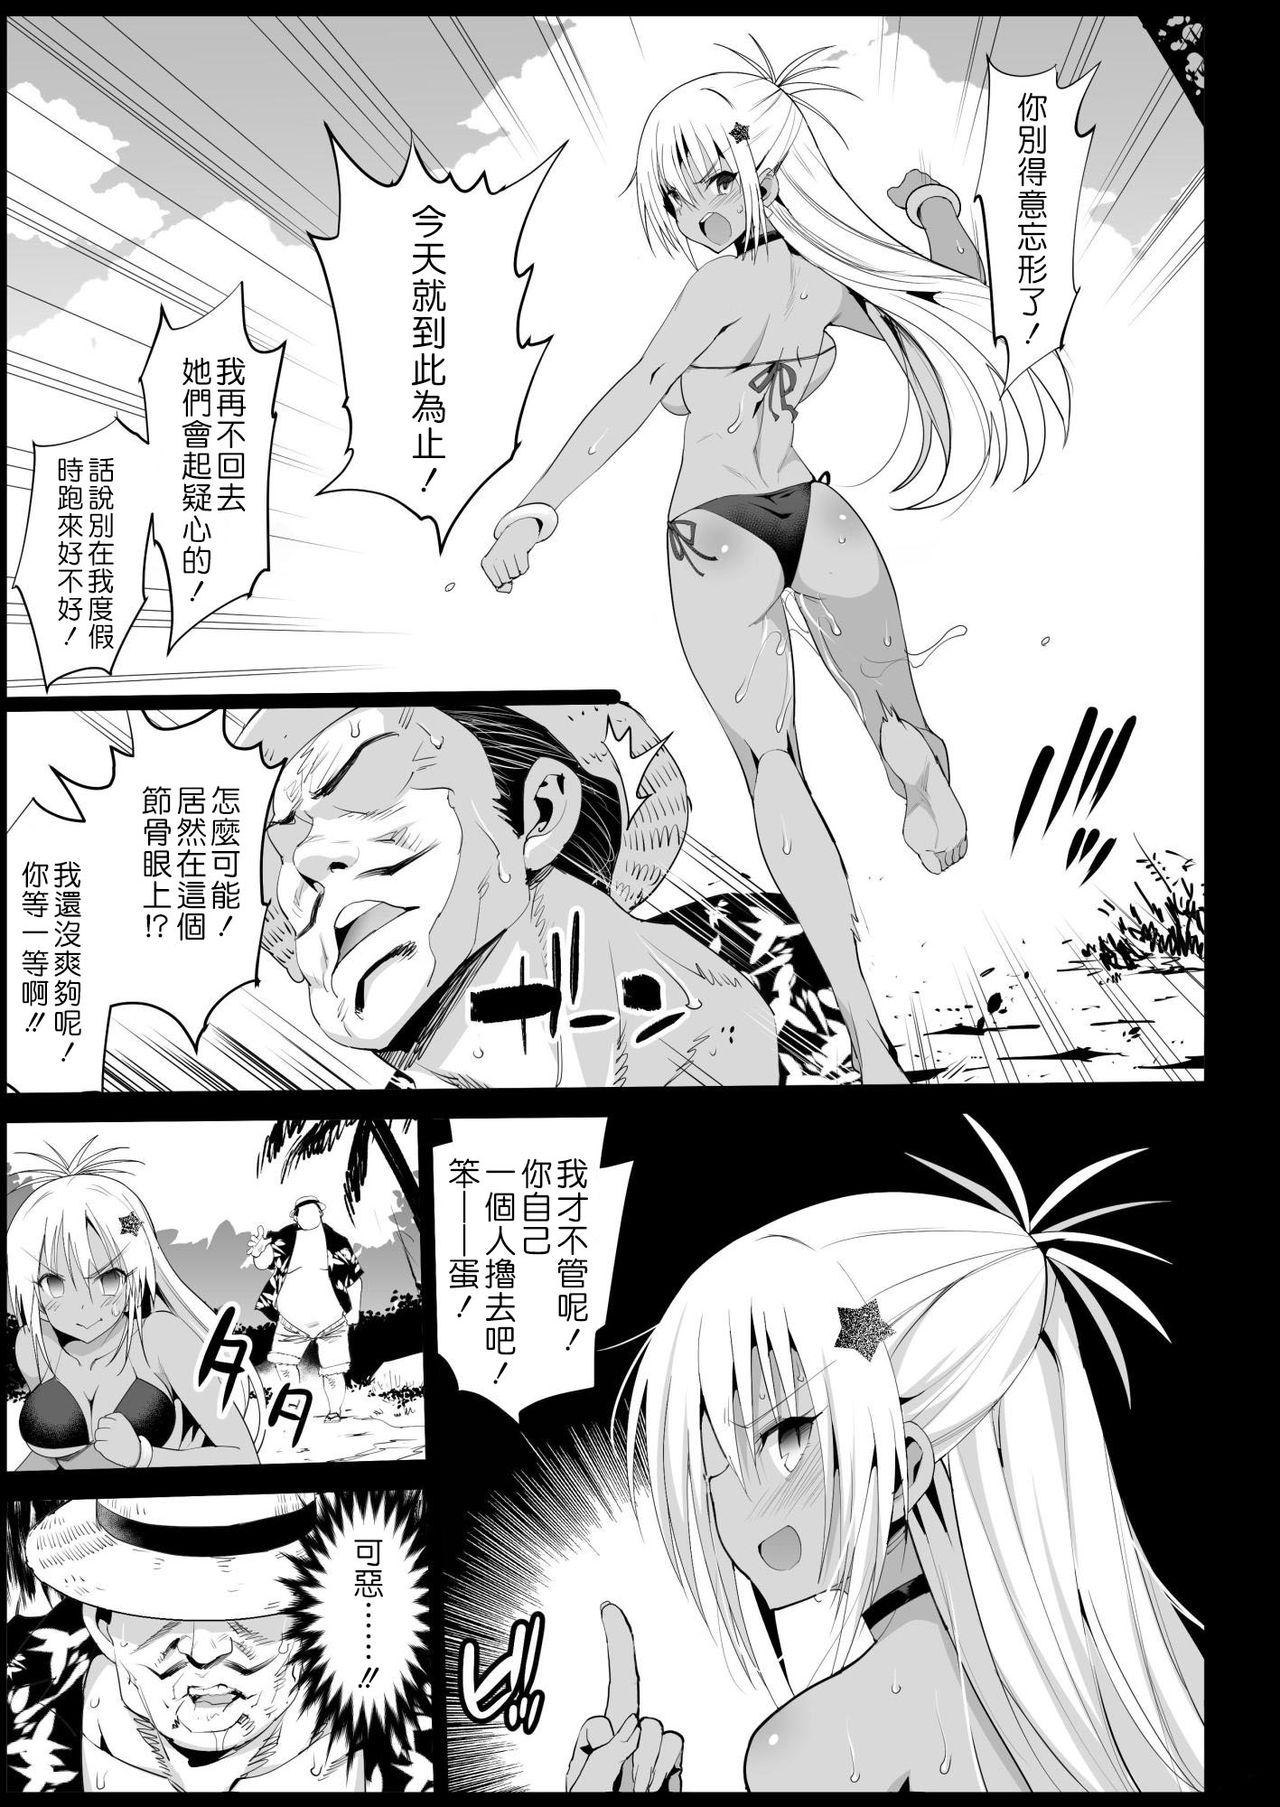 Mulher Kyousei Enkou 3 - Neon genesis evangelion Hottie - Page 12